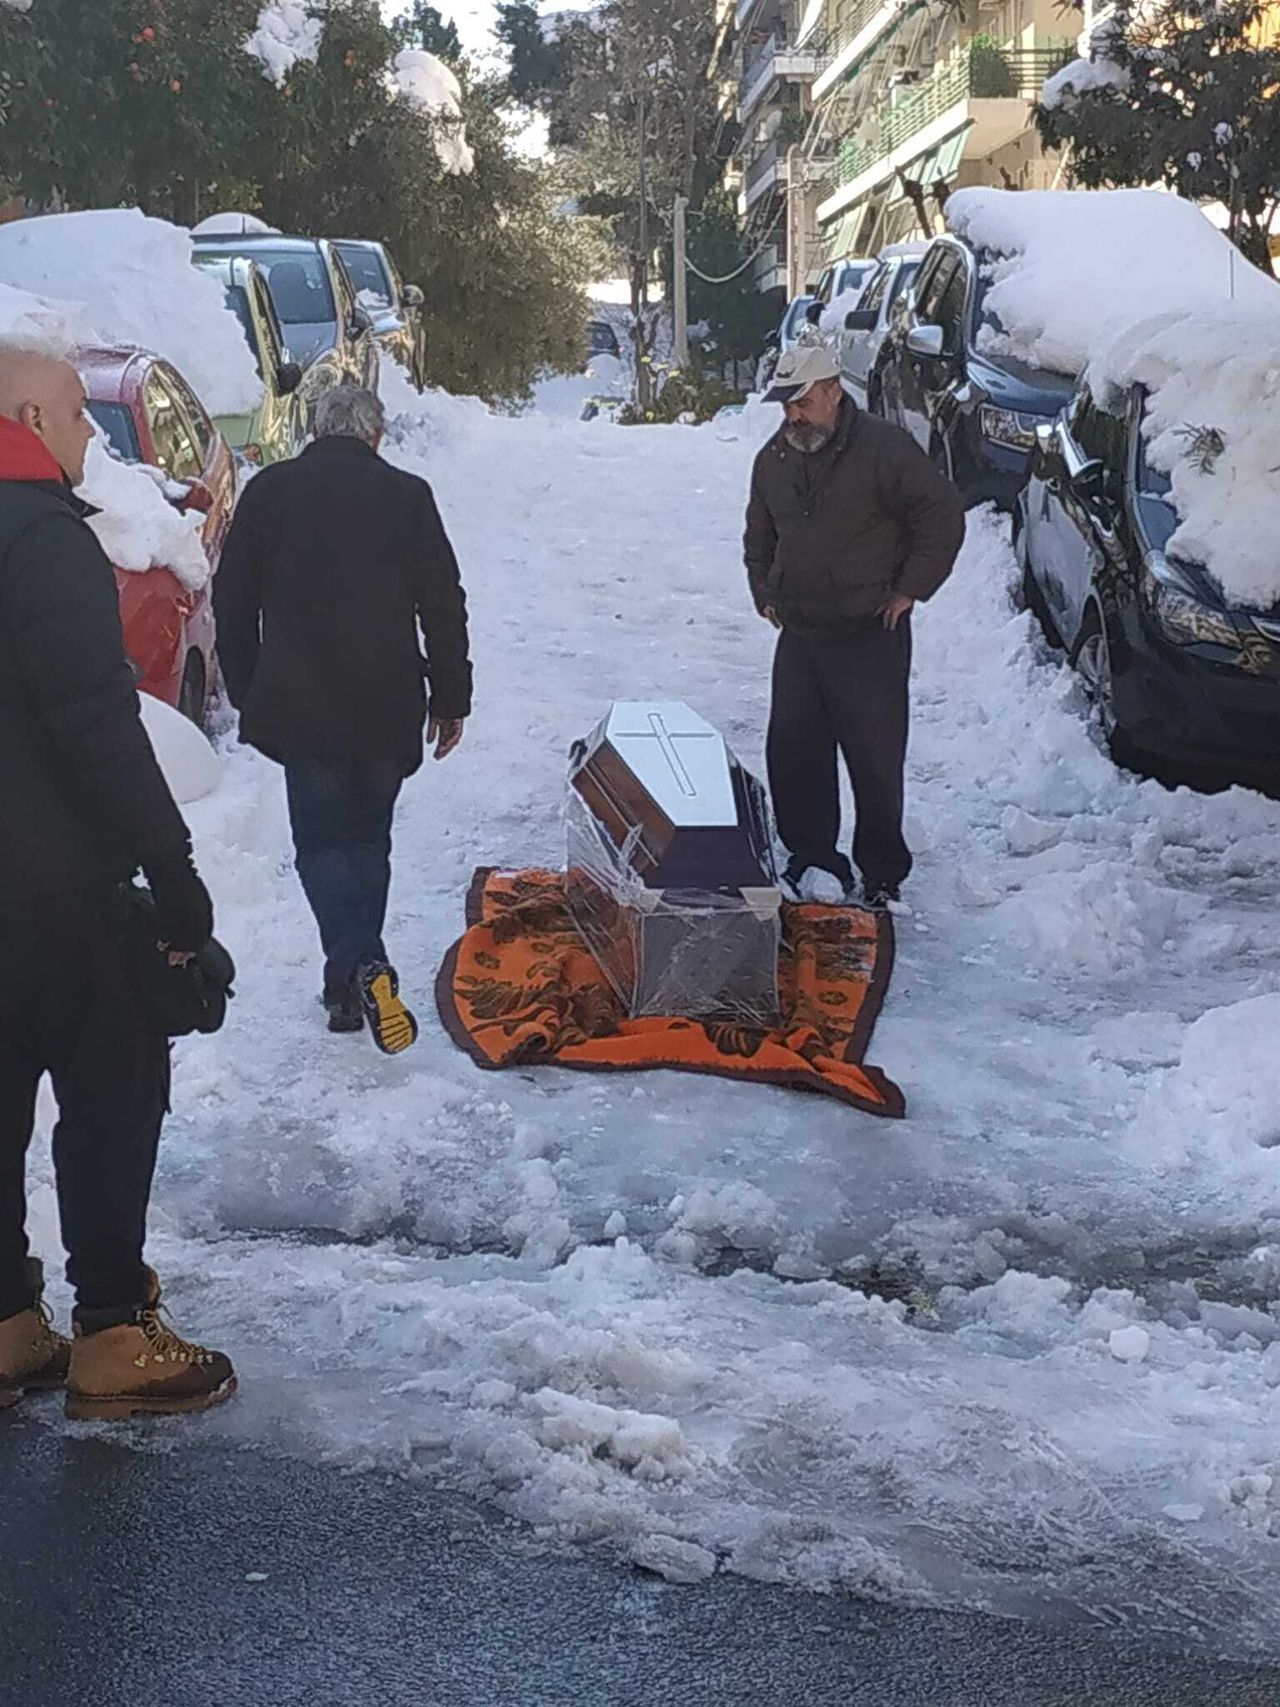 Τρεις άνδρες στου Ζωγράφου σέρνουν πάνω στο χιόνι με τη βοήθεια μιας κουβέρτας, ένα φέρετρο με σκοπό να το βάλουν στη νεκροφόρα